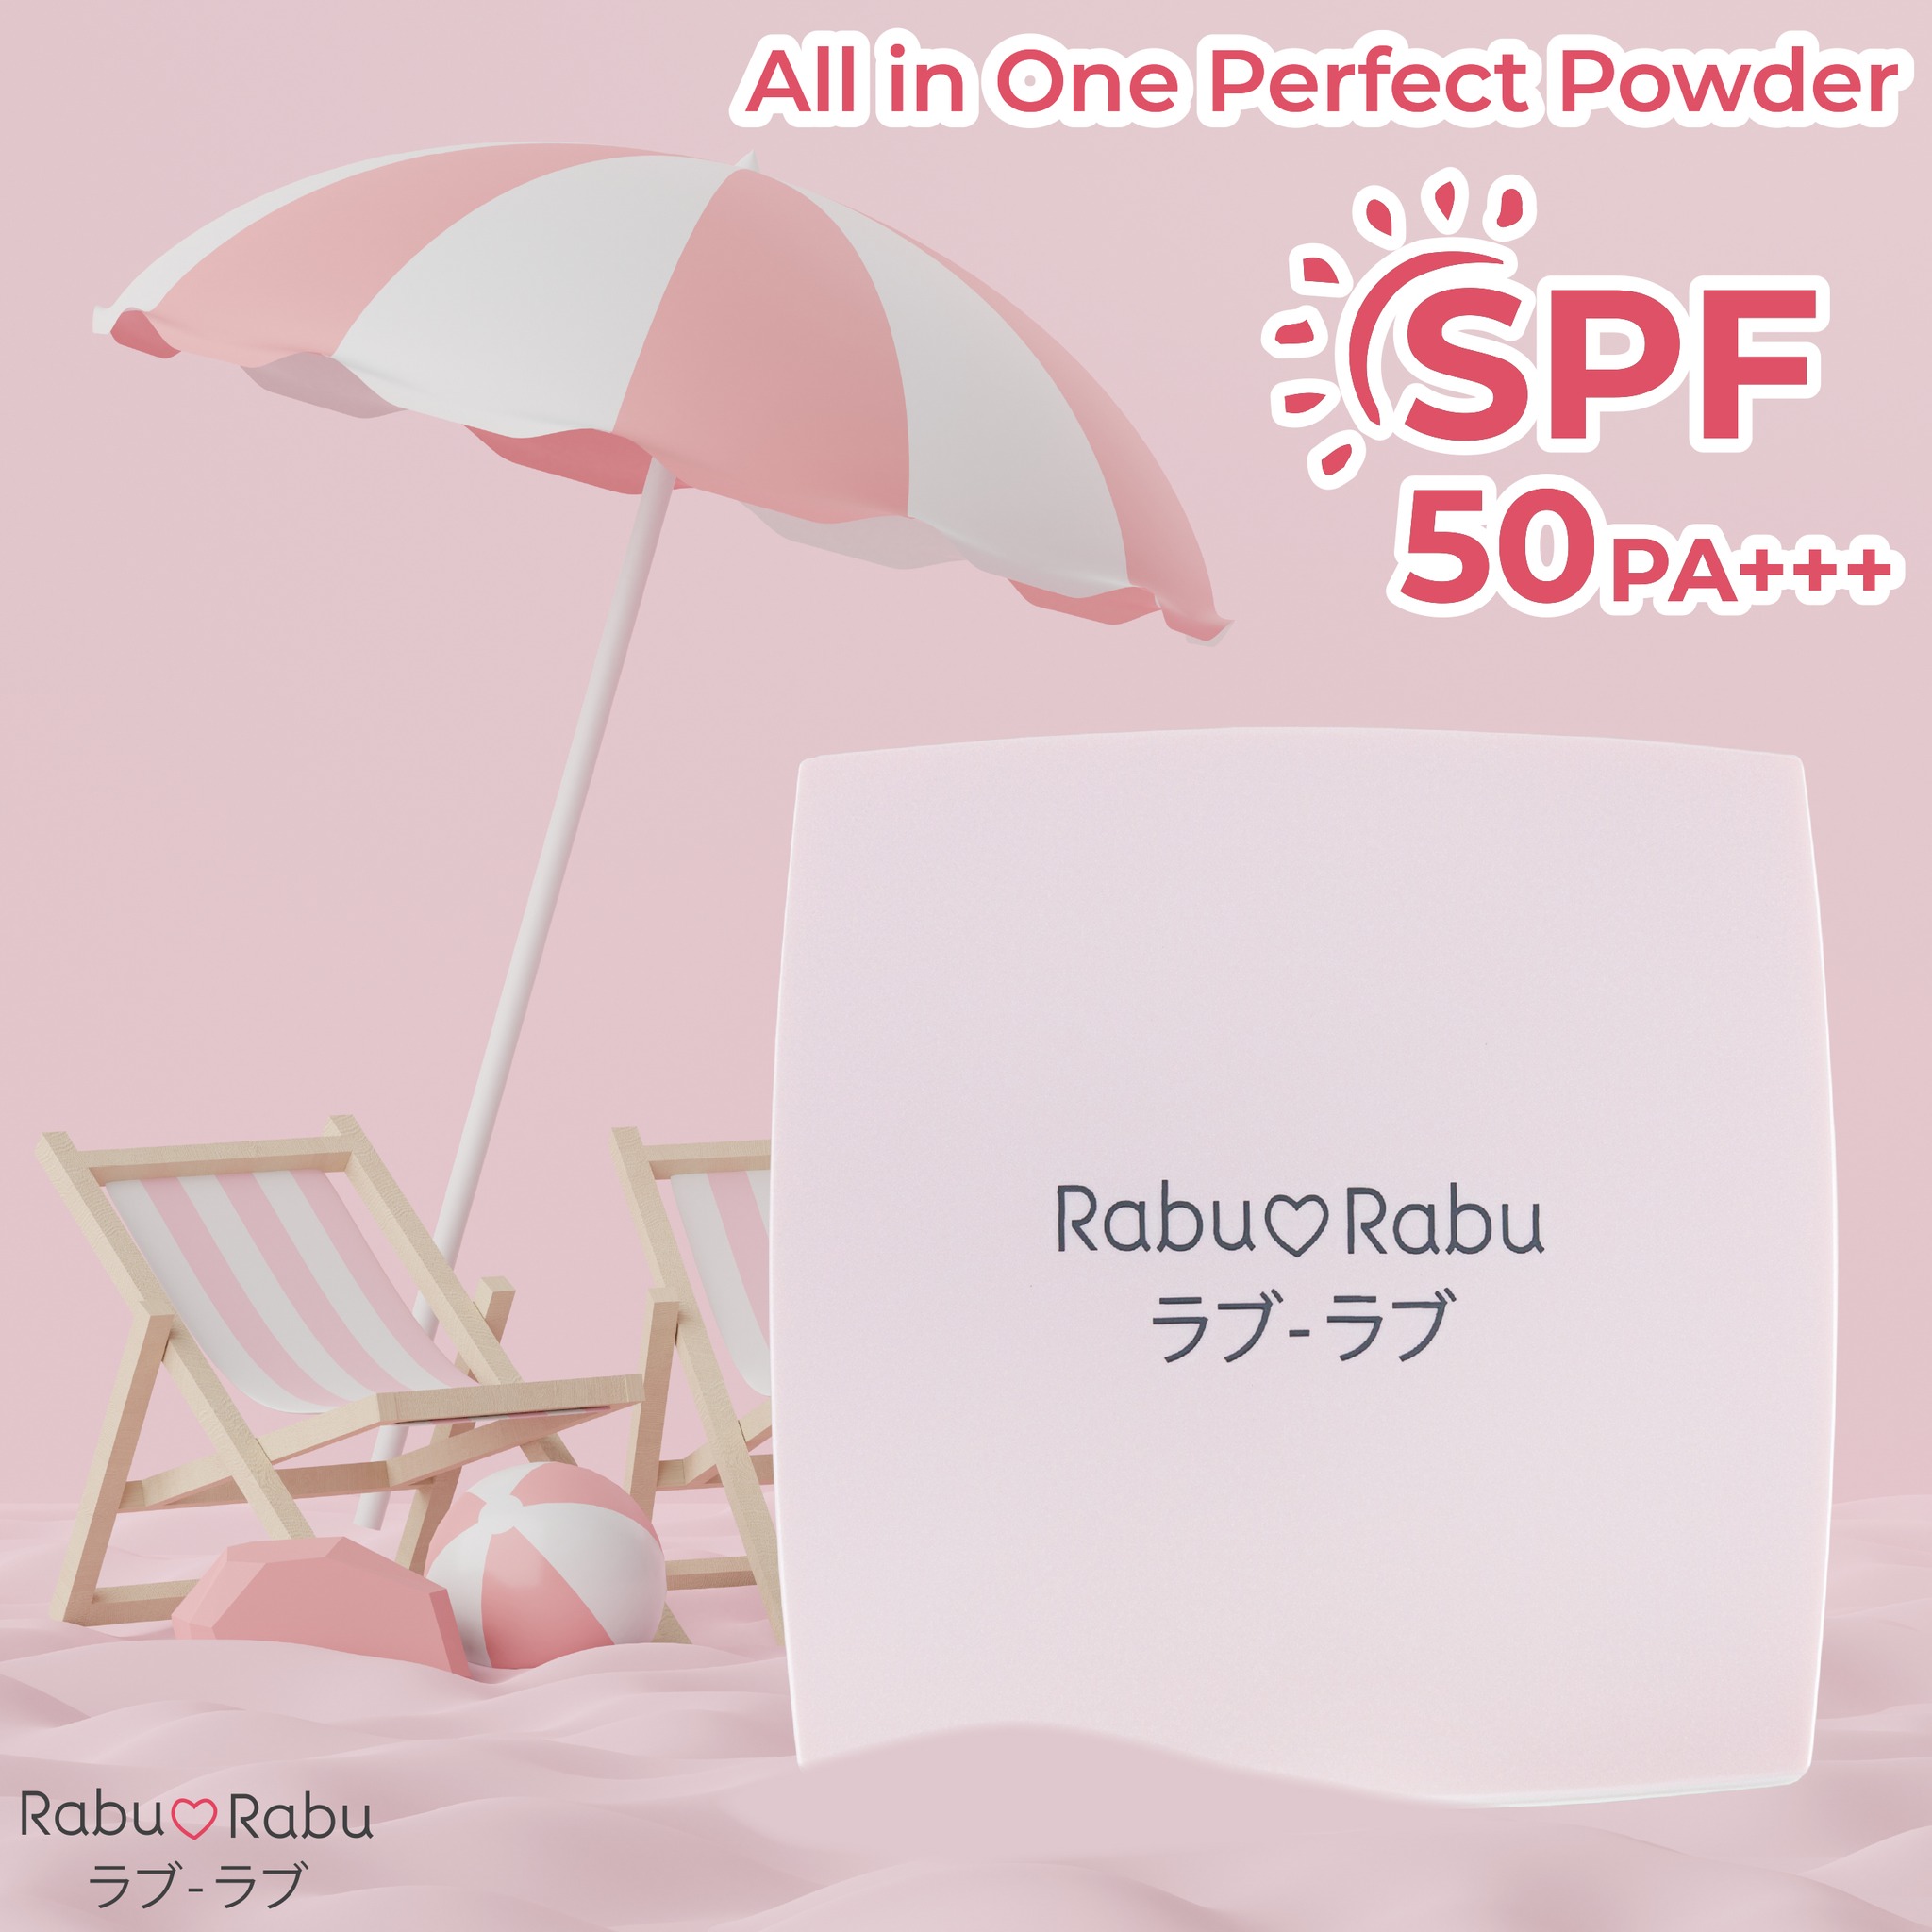 Rabu_Rabu All in One Perfect Powder